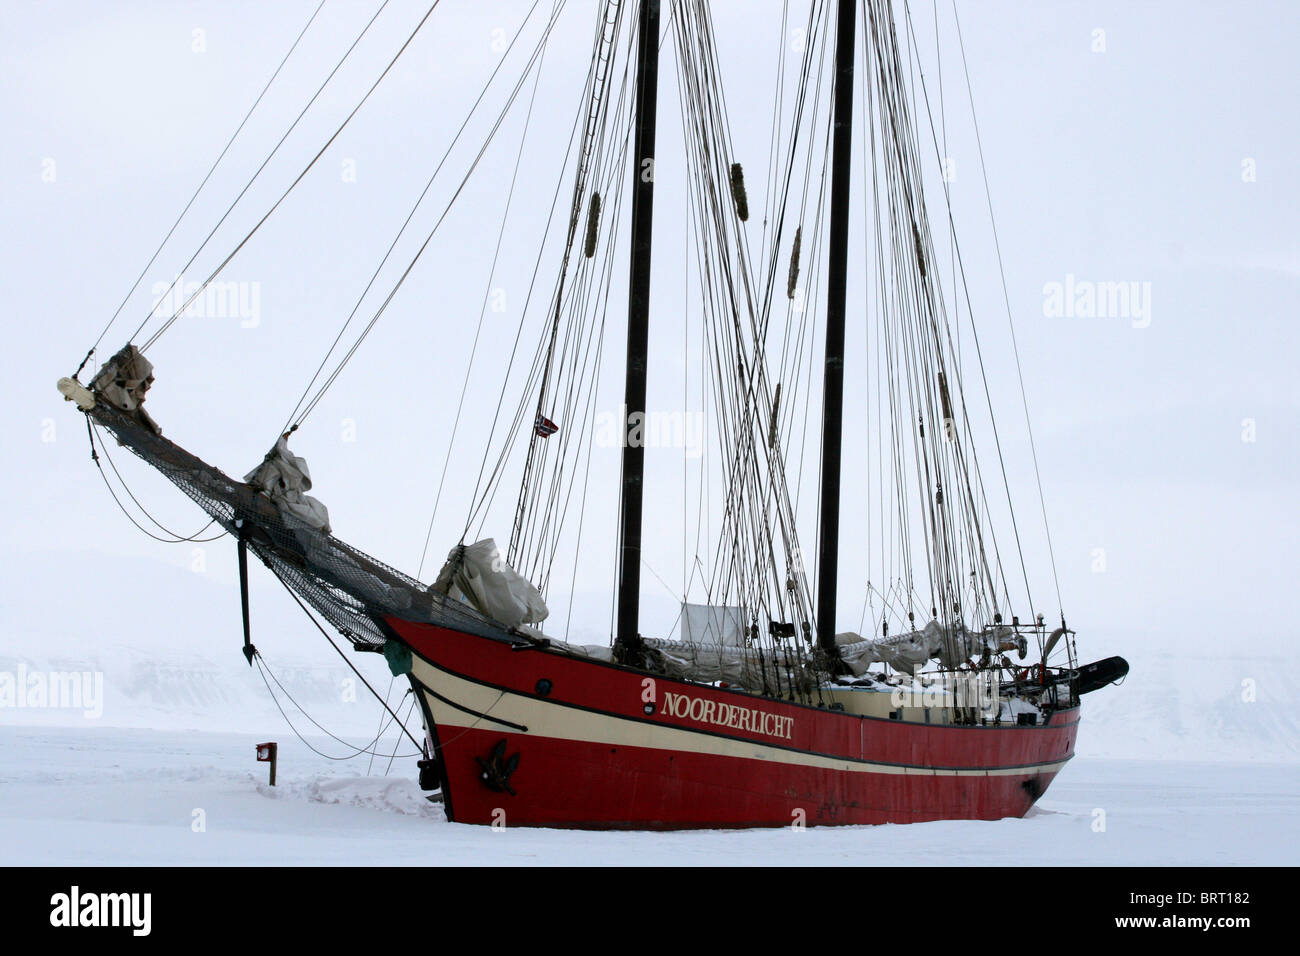 Noorderlicht, Svalbard 2009. Sailing ship in the ice. Stock Photo